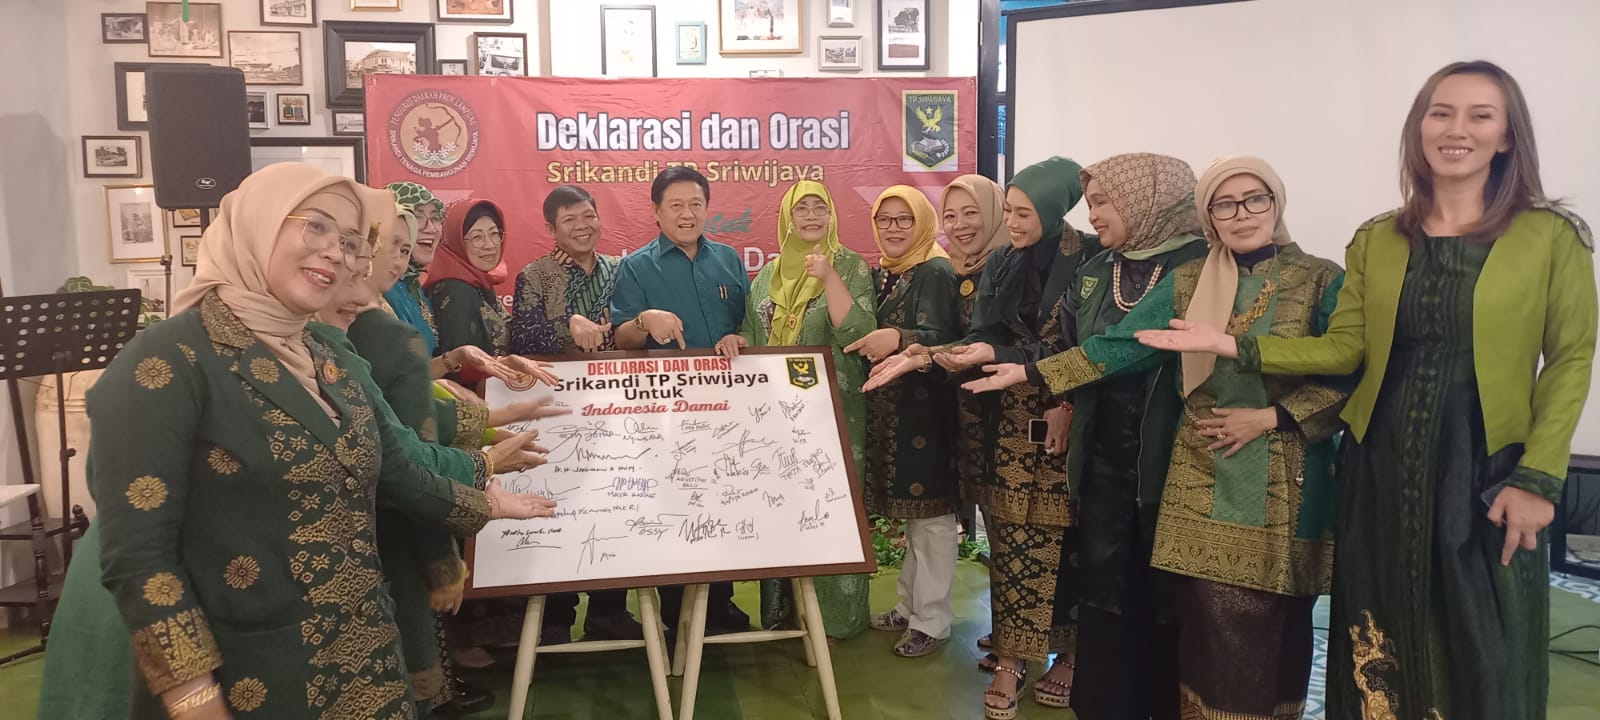 Srikandi TP Sriwijaya Adakan Deklarasi, Orasi dan Pengumpulan 1000 Tanda Tangan untuk Indonesia Damai